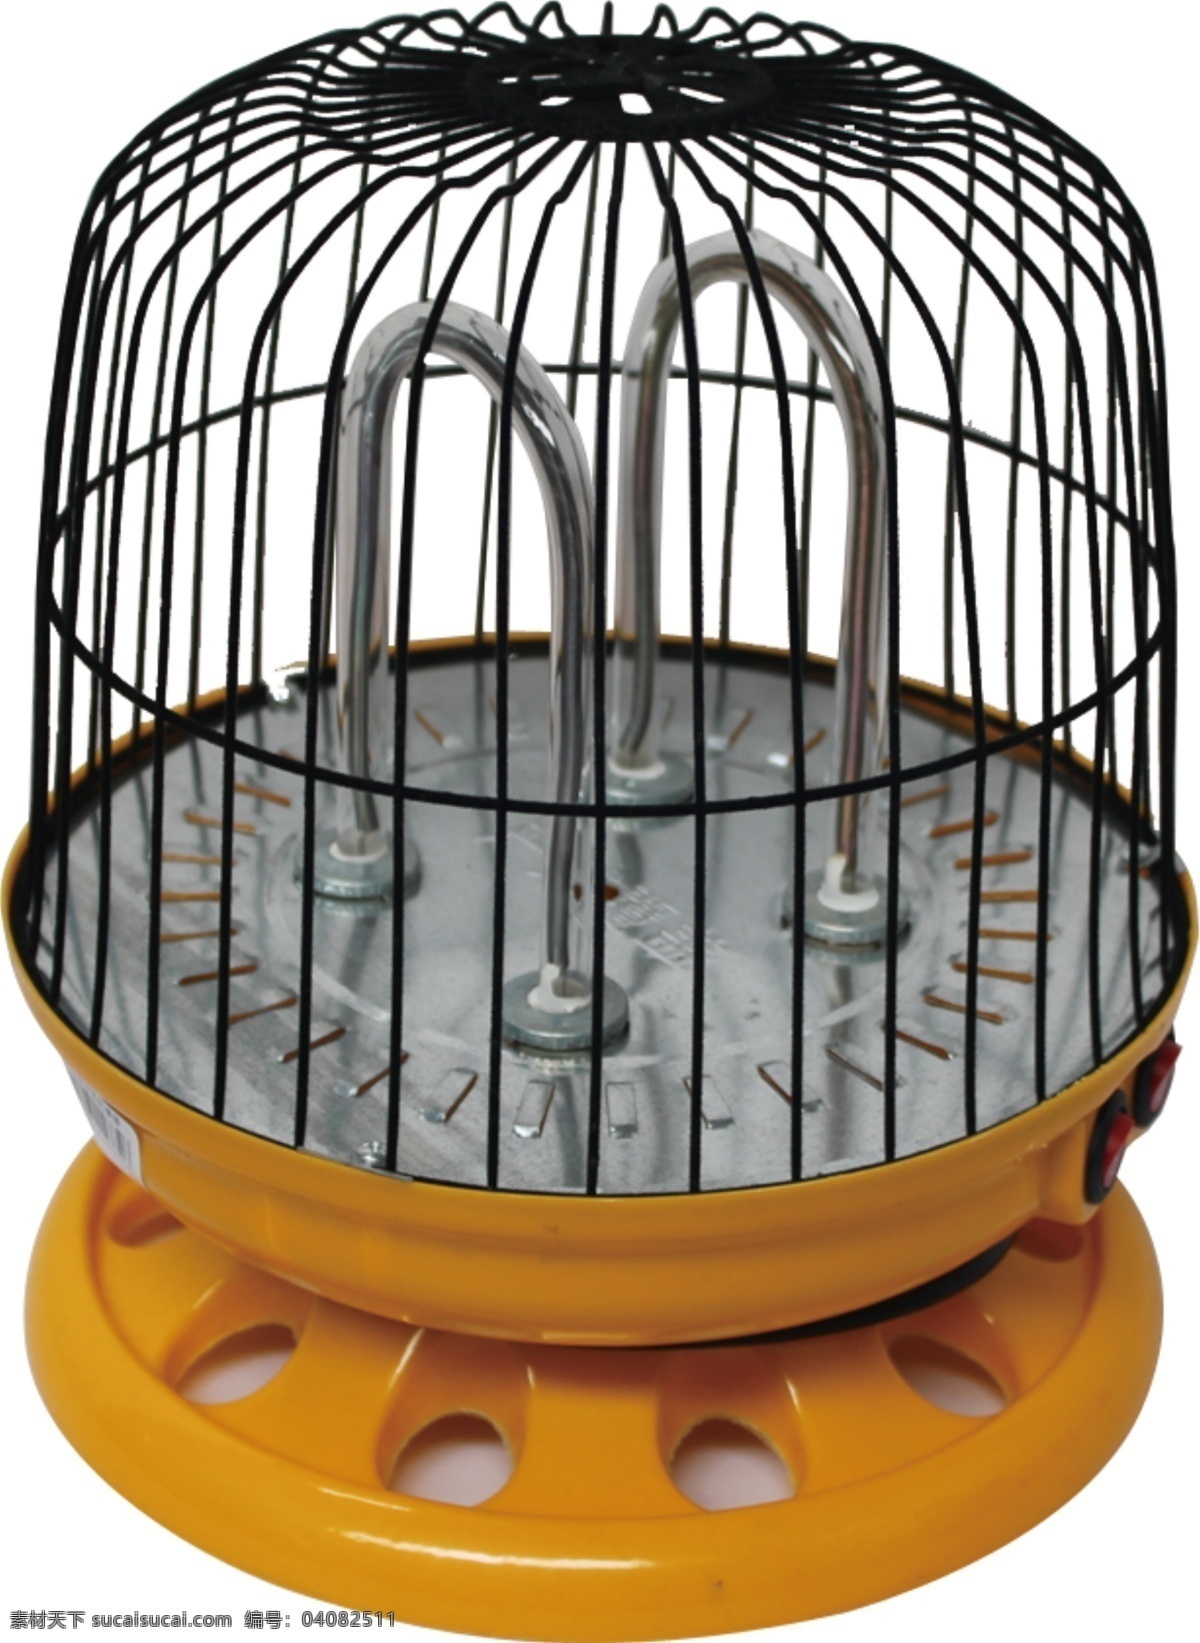 鸟笼取暖器 取暖器 电器 家用电器 psd格式 dm商品图 生活百科 生活用品